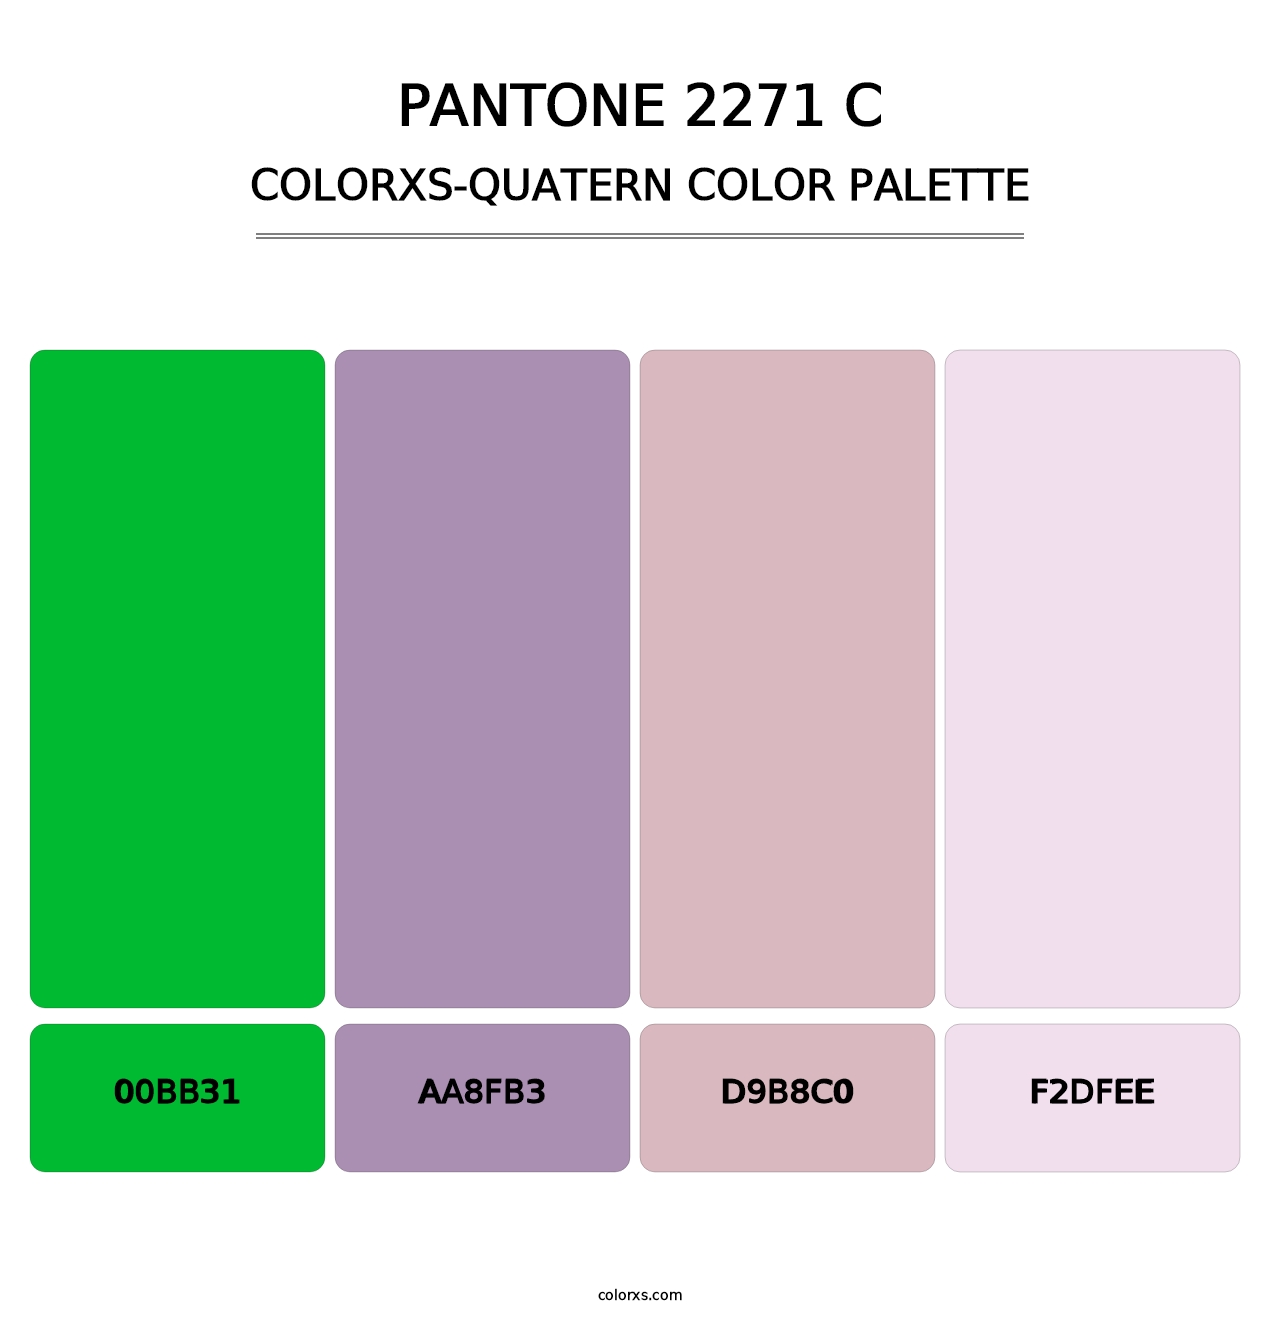 PANTONE 2271 C - Colorxs Quatern Palette